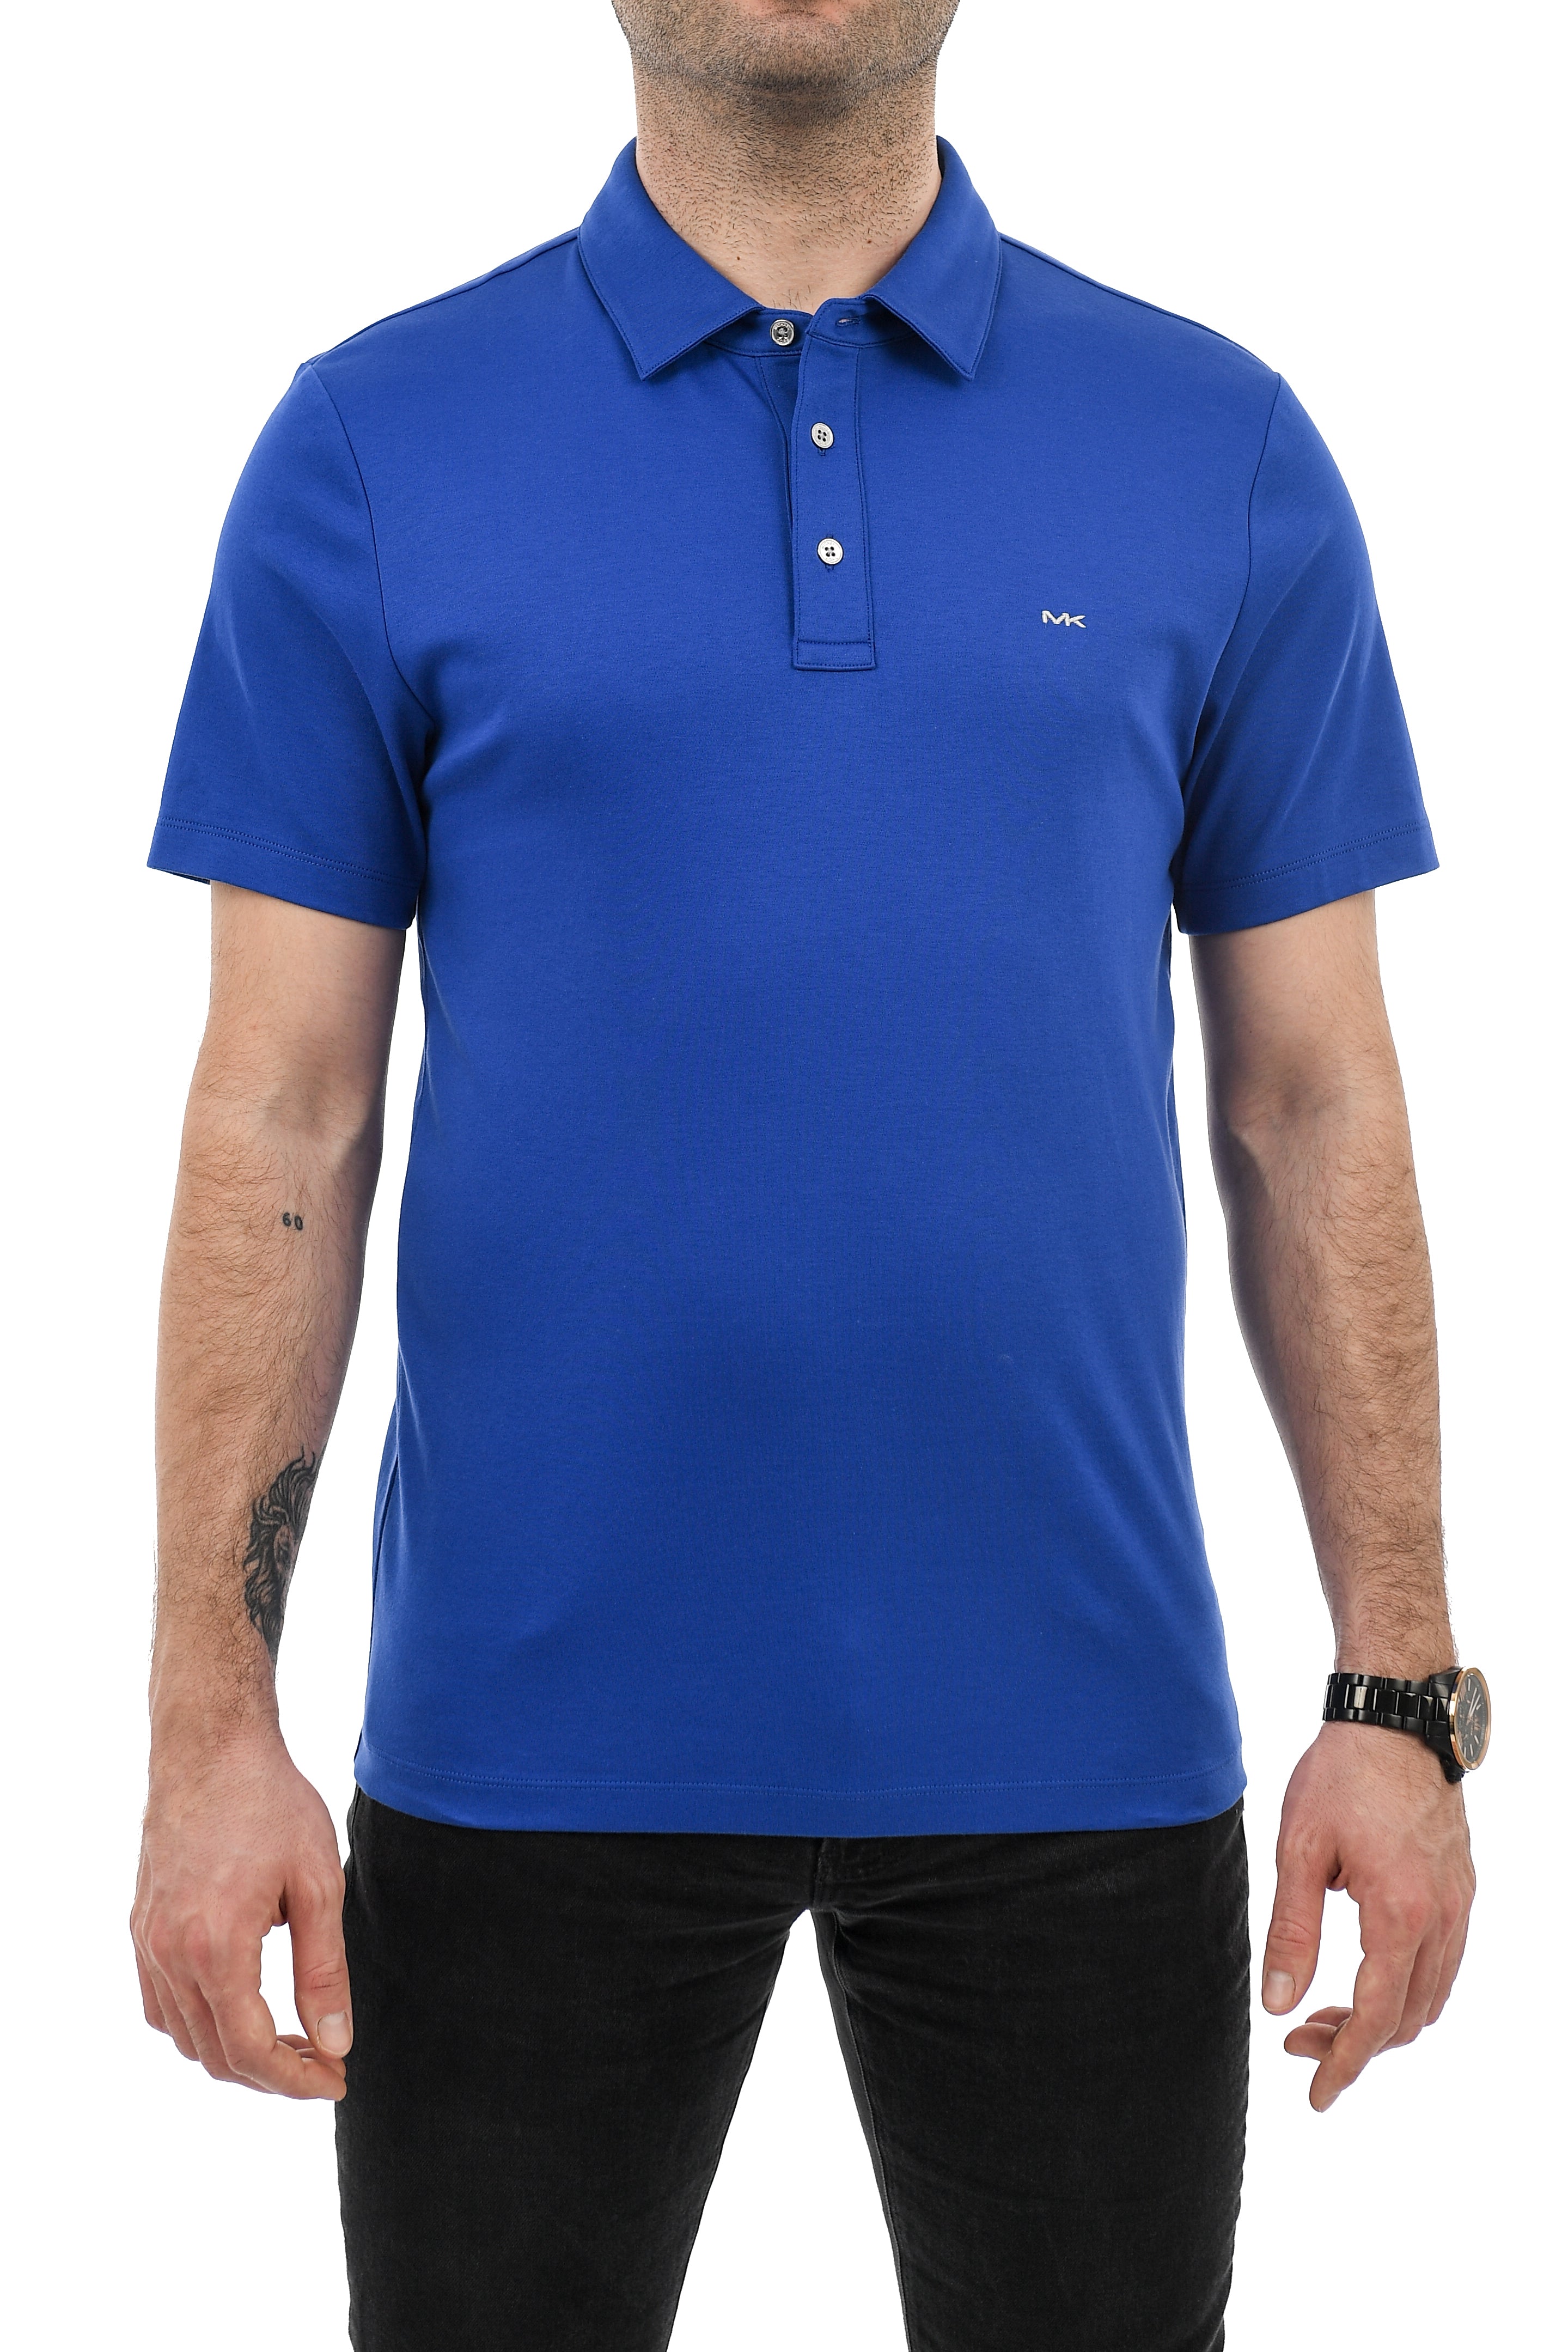 Michael Kors Short Sleeve Polo Shirt Royal Blue